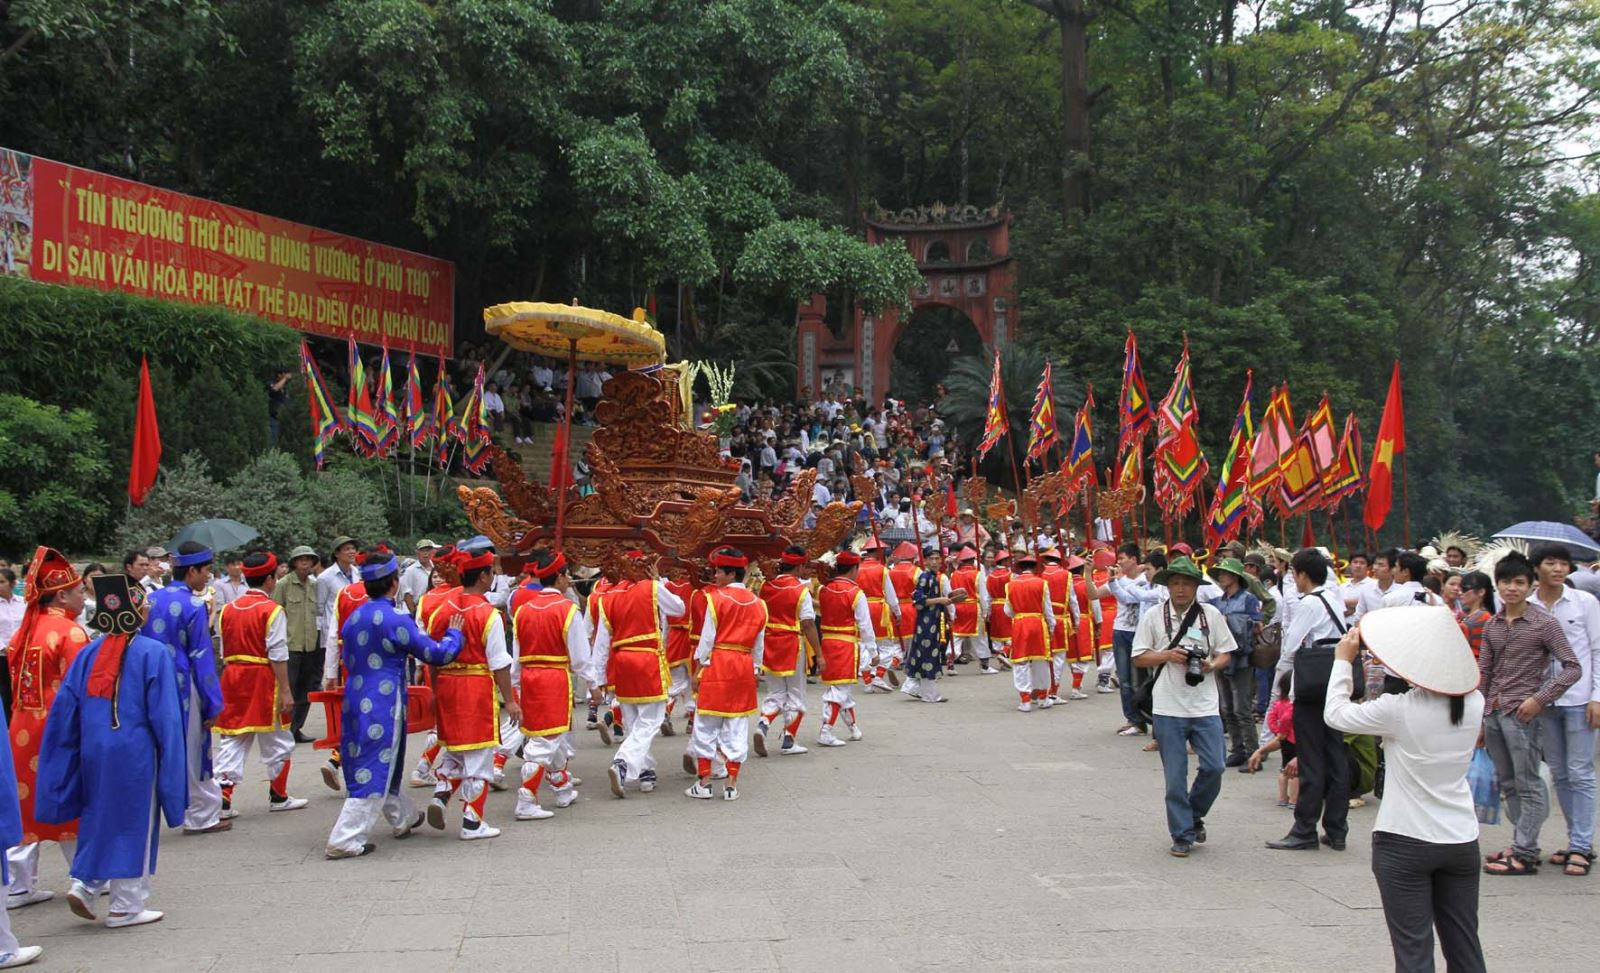 Tín ngưỡng thờ cúng Hùng Vương ở Phú Thọ được UNESCO ghi danh: sự trường tồn của đạo lý “uống nước nhớ nguồn”